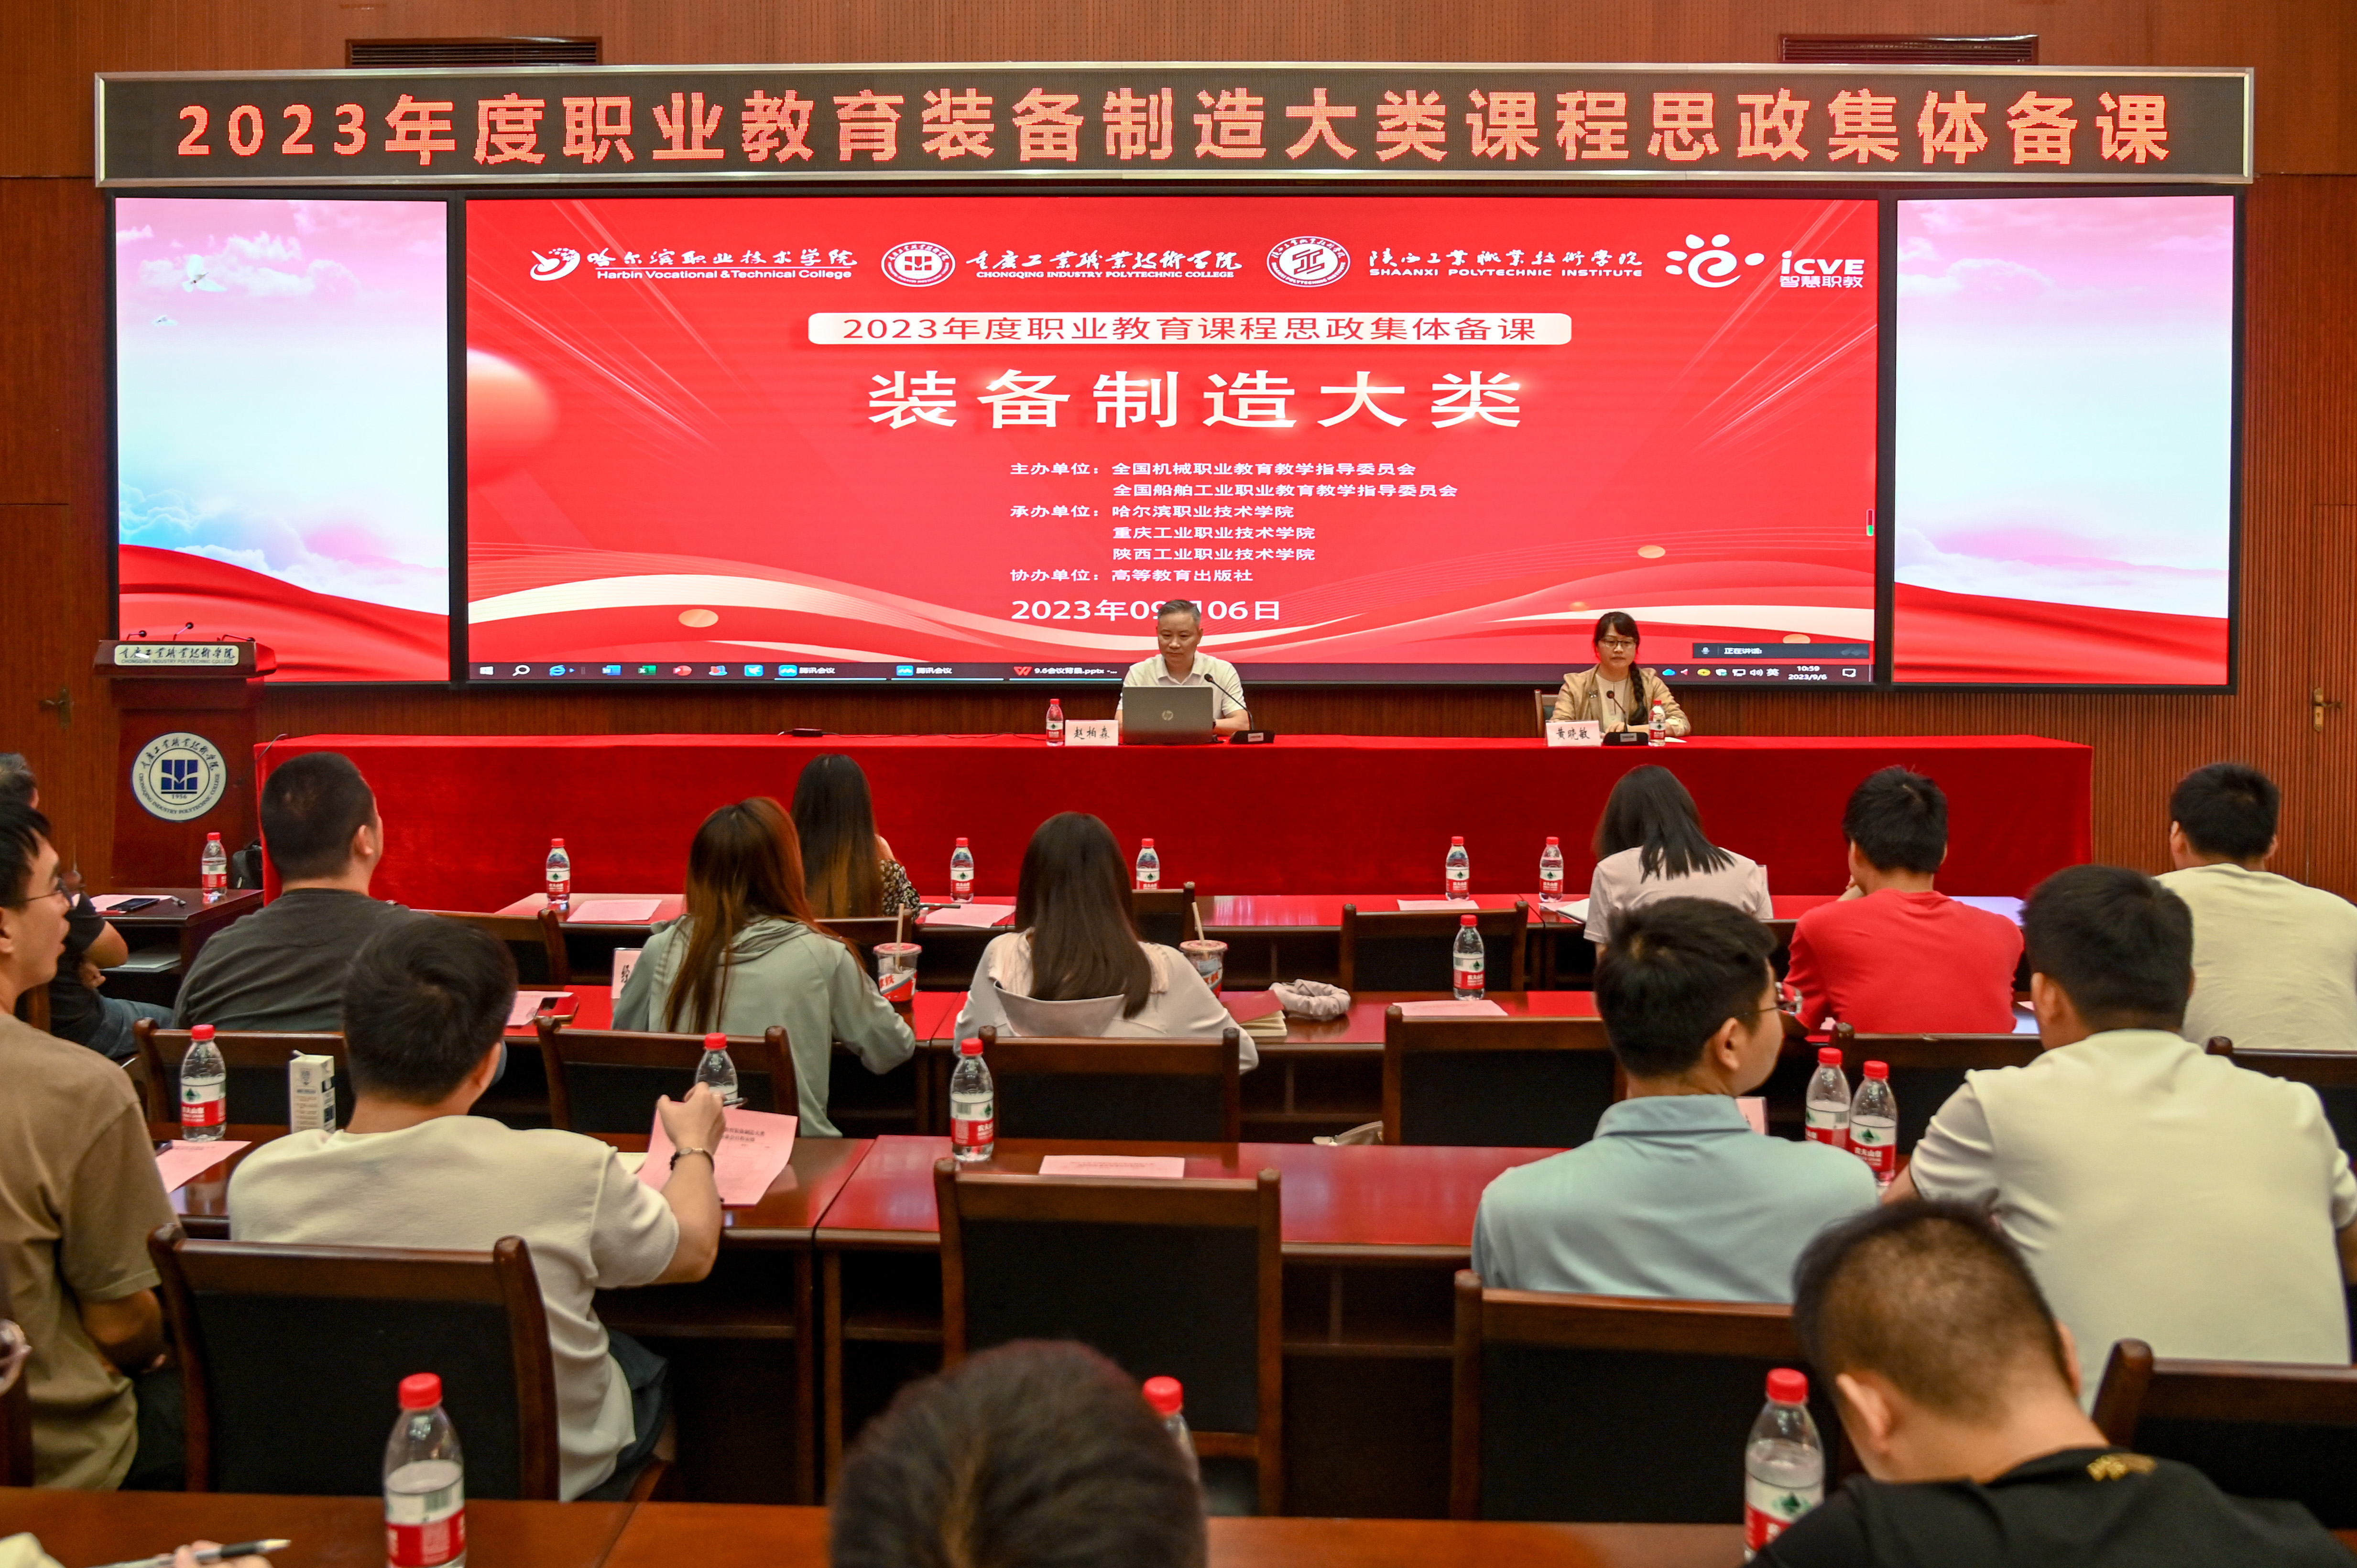 2023年度全国职业教育装备制造大类课程思政集体备课会在重庆工业职业技术学院举行